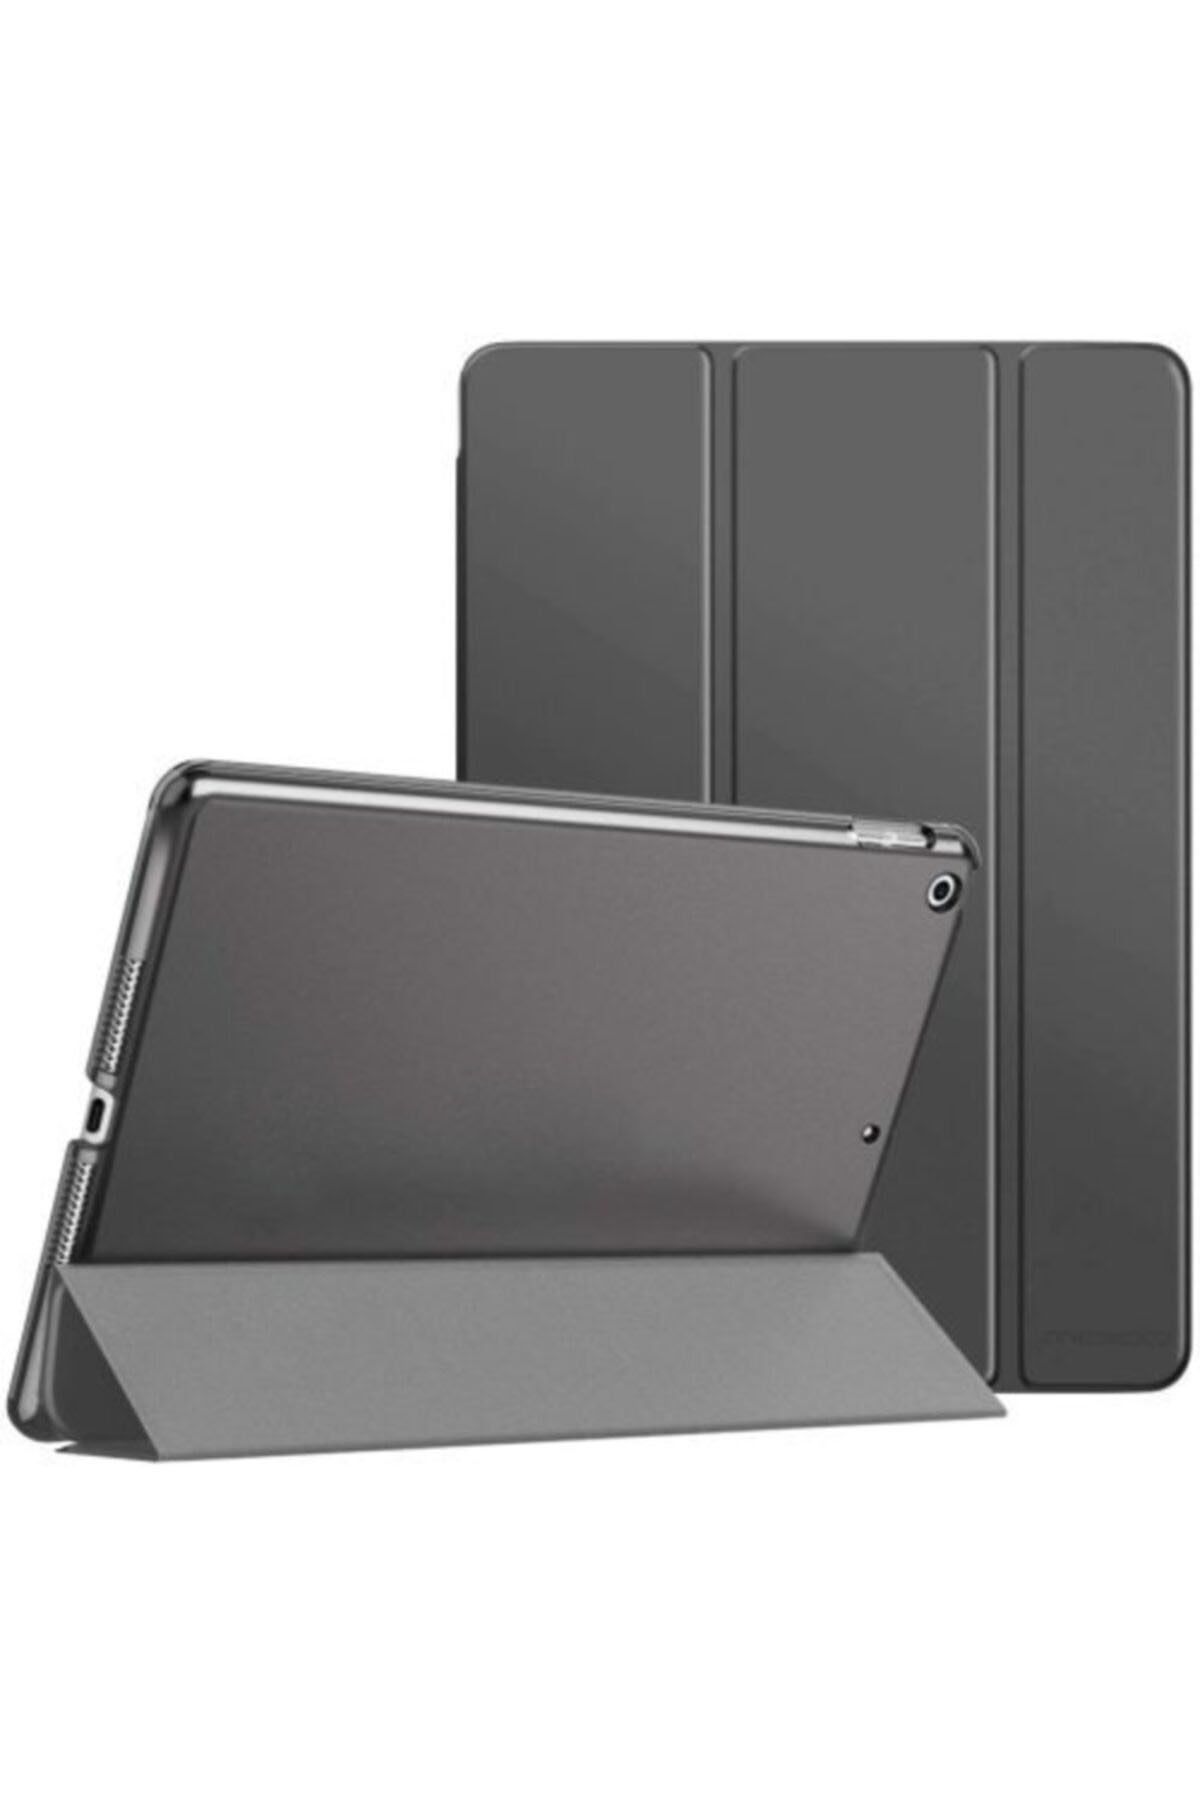 TEKNETSTORE Ipad 8. ve 9. Nesil 2020 /2021 10.2 Inç Tablet Uyumlu Flip Smart Standlı Akıllı Kılıf Smart Cover